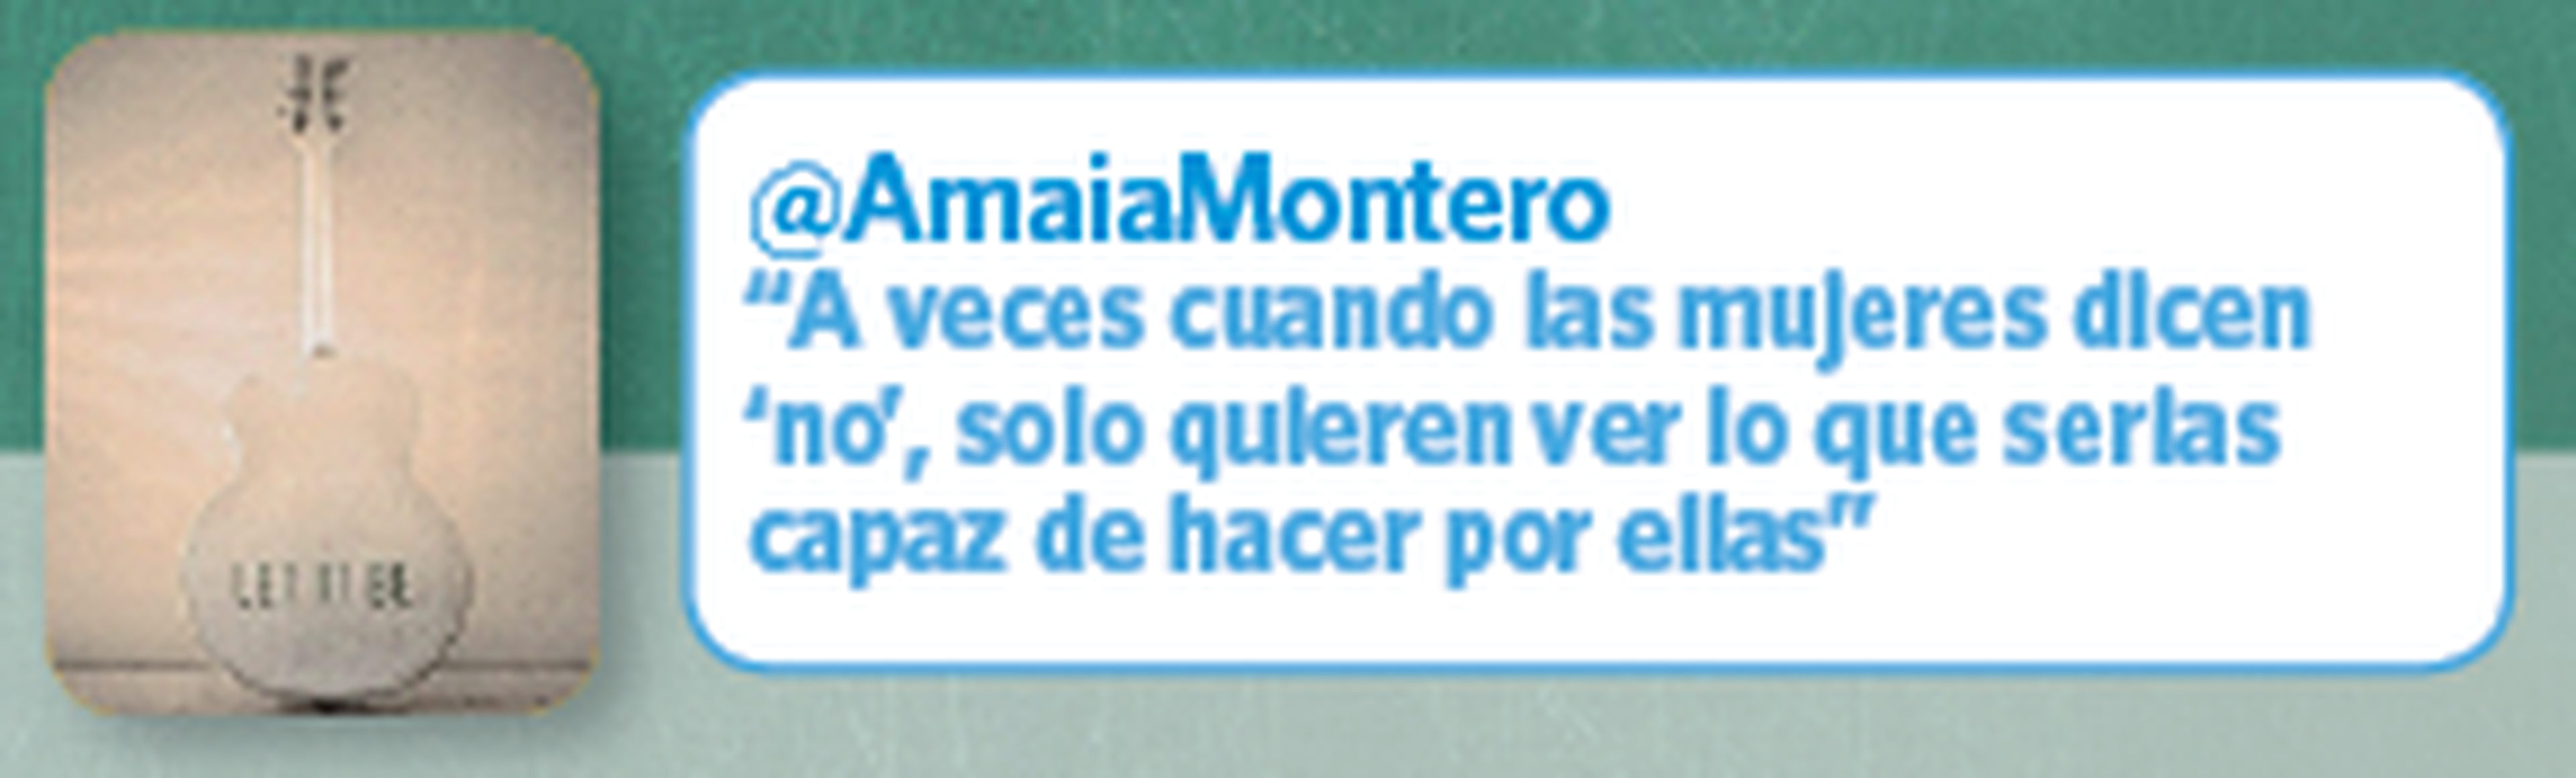 Twitter Amaia Montero